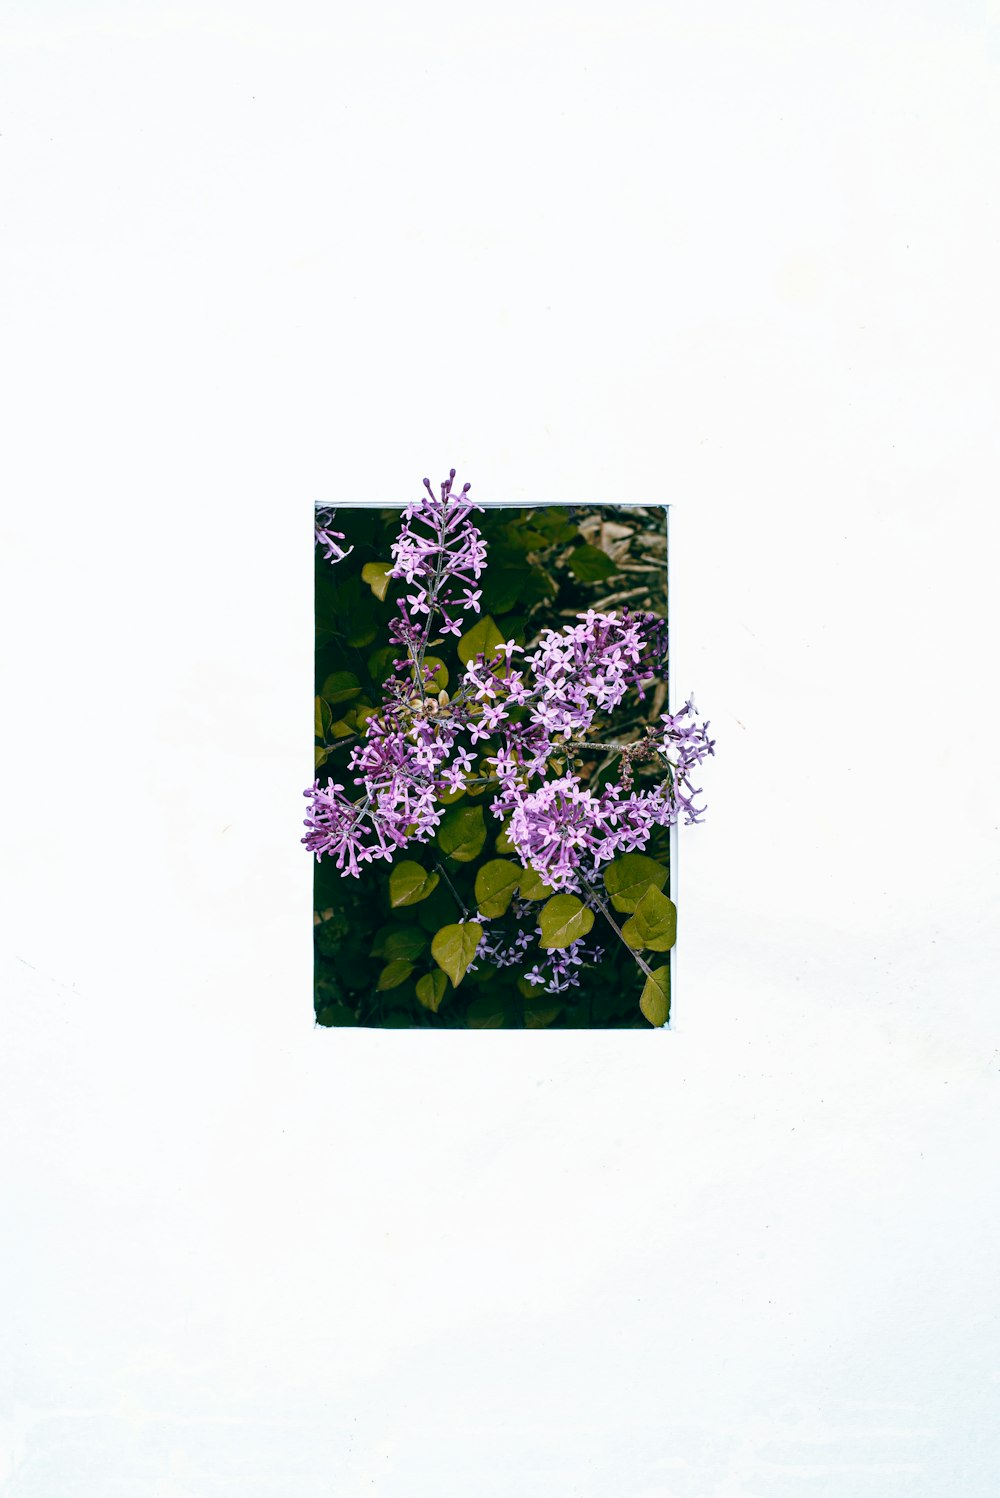 une image de fleurs violettes sur fond blanc